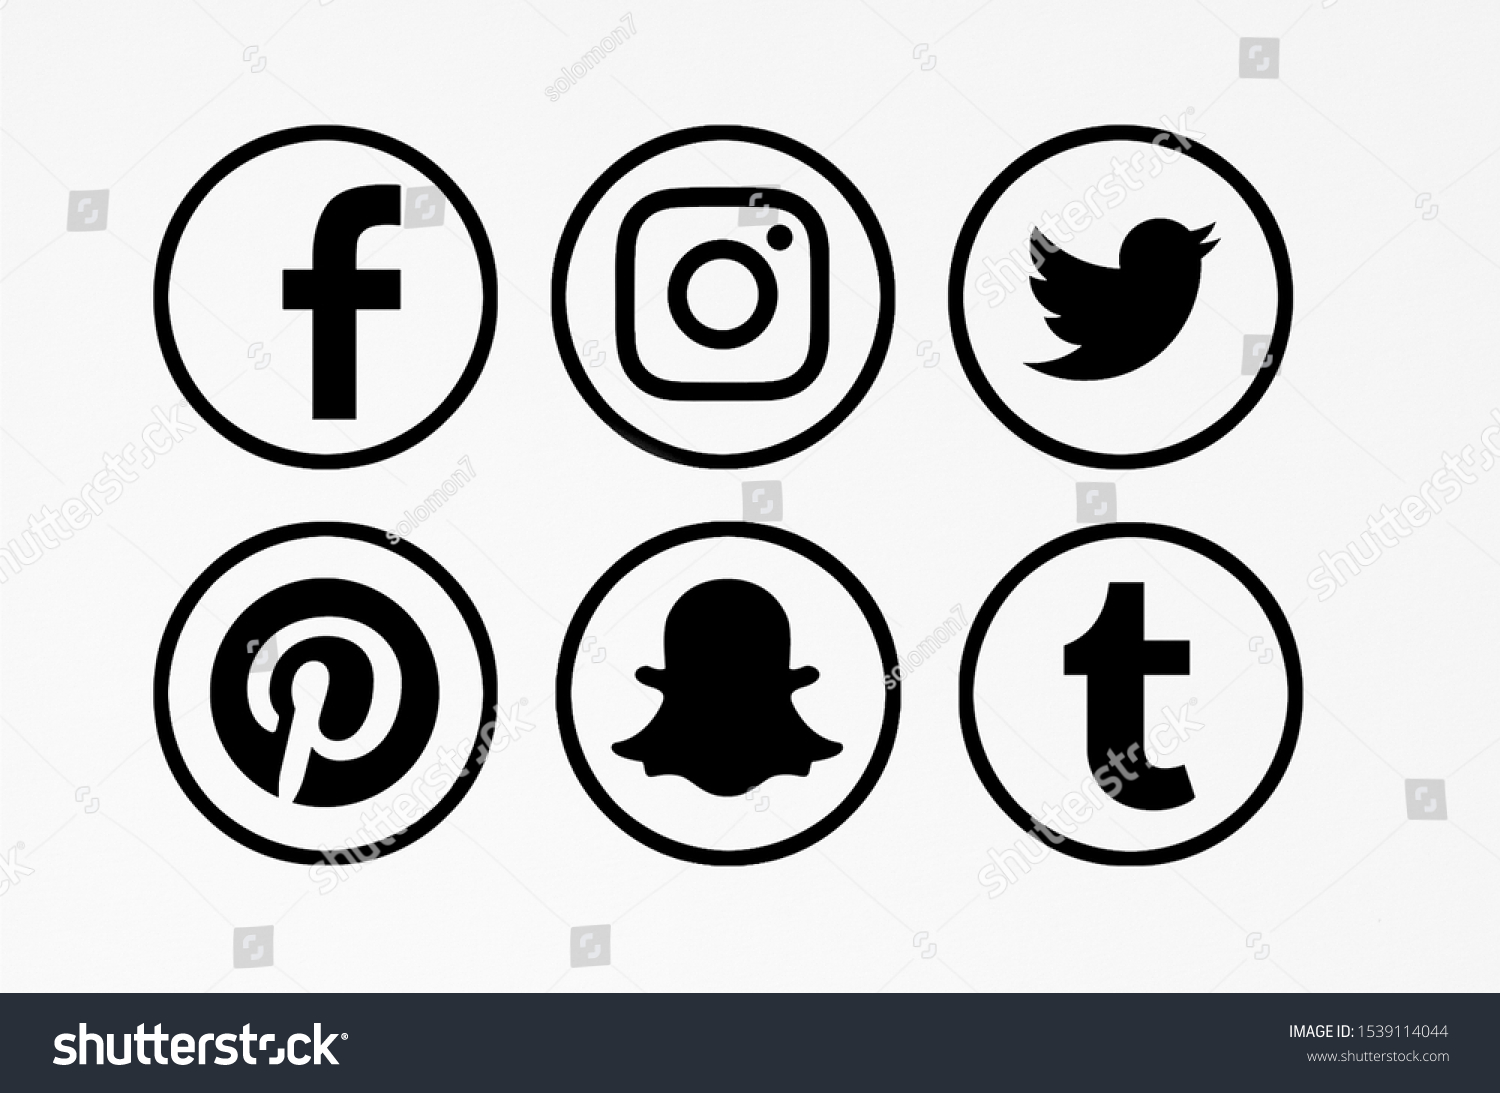 16,184 Réseaux sociaux logos Images, Stock Photos & Vectors | Shutterstock